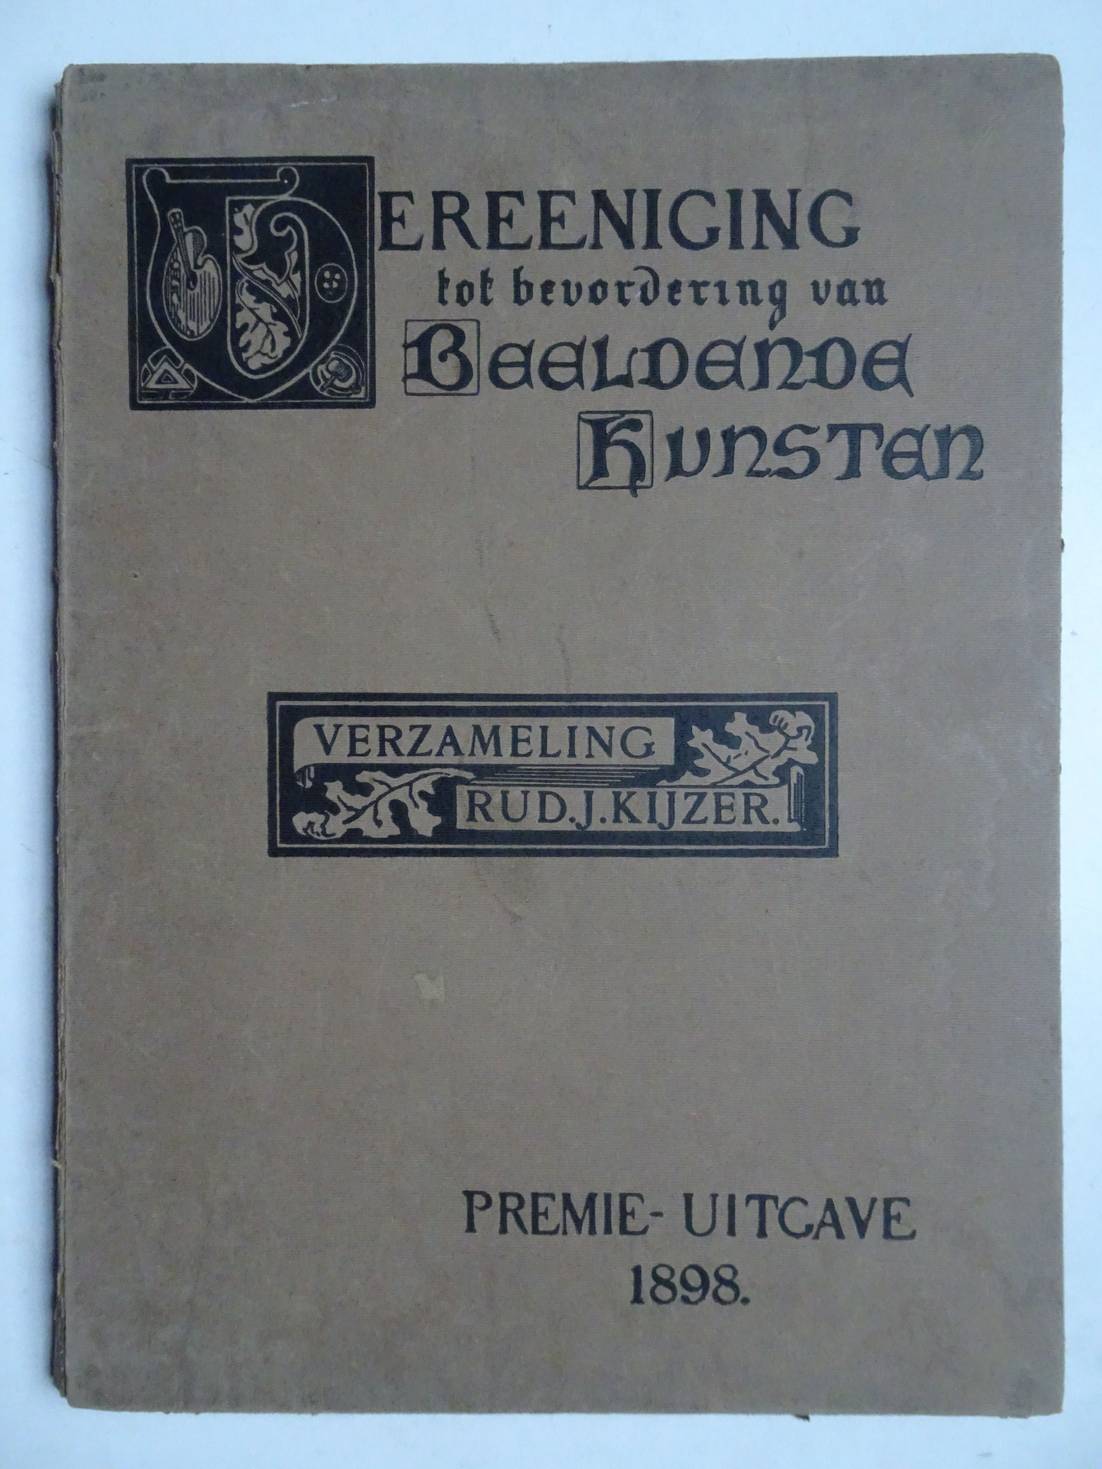 -. - Vereeniging tot bevordering van beeldende kunsten. Verzameling Rud. J. Kijzer. Premie-uitgave 1898.